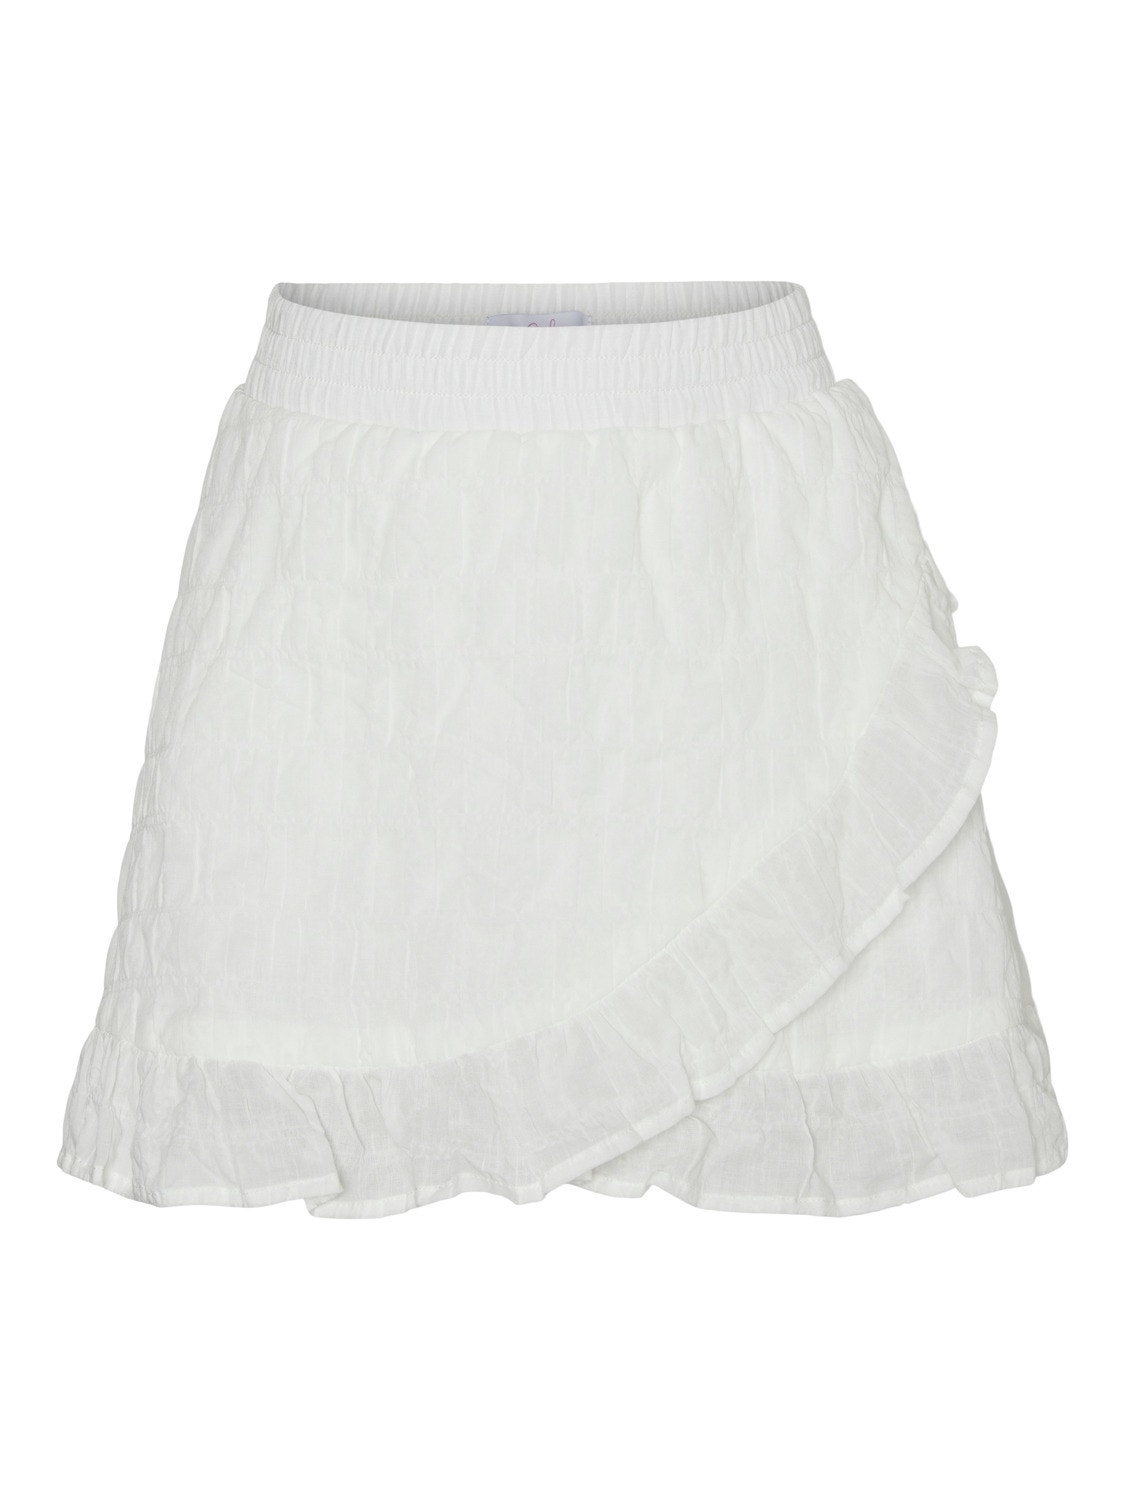 Vero Moda VMDONNA Short Skirt -Snow White - 10287426